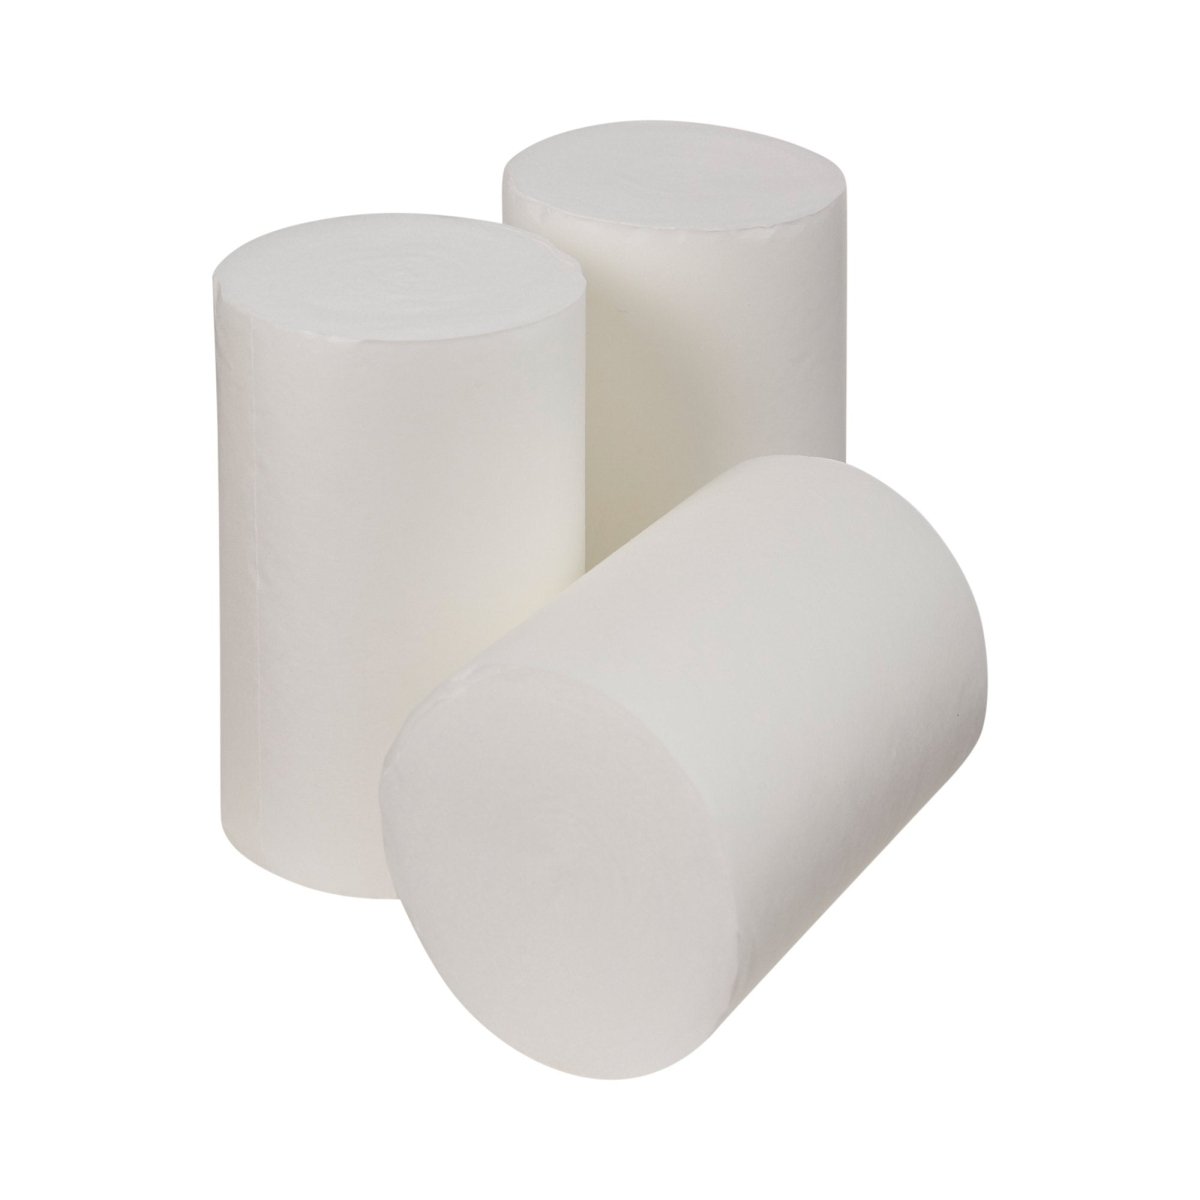 3M White Polyester Undercast Cast Padding - 374555_BG - 2